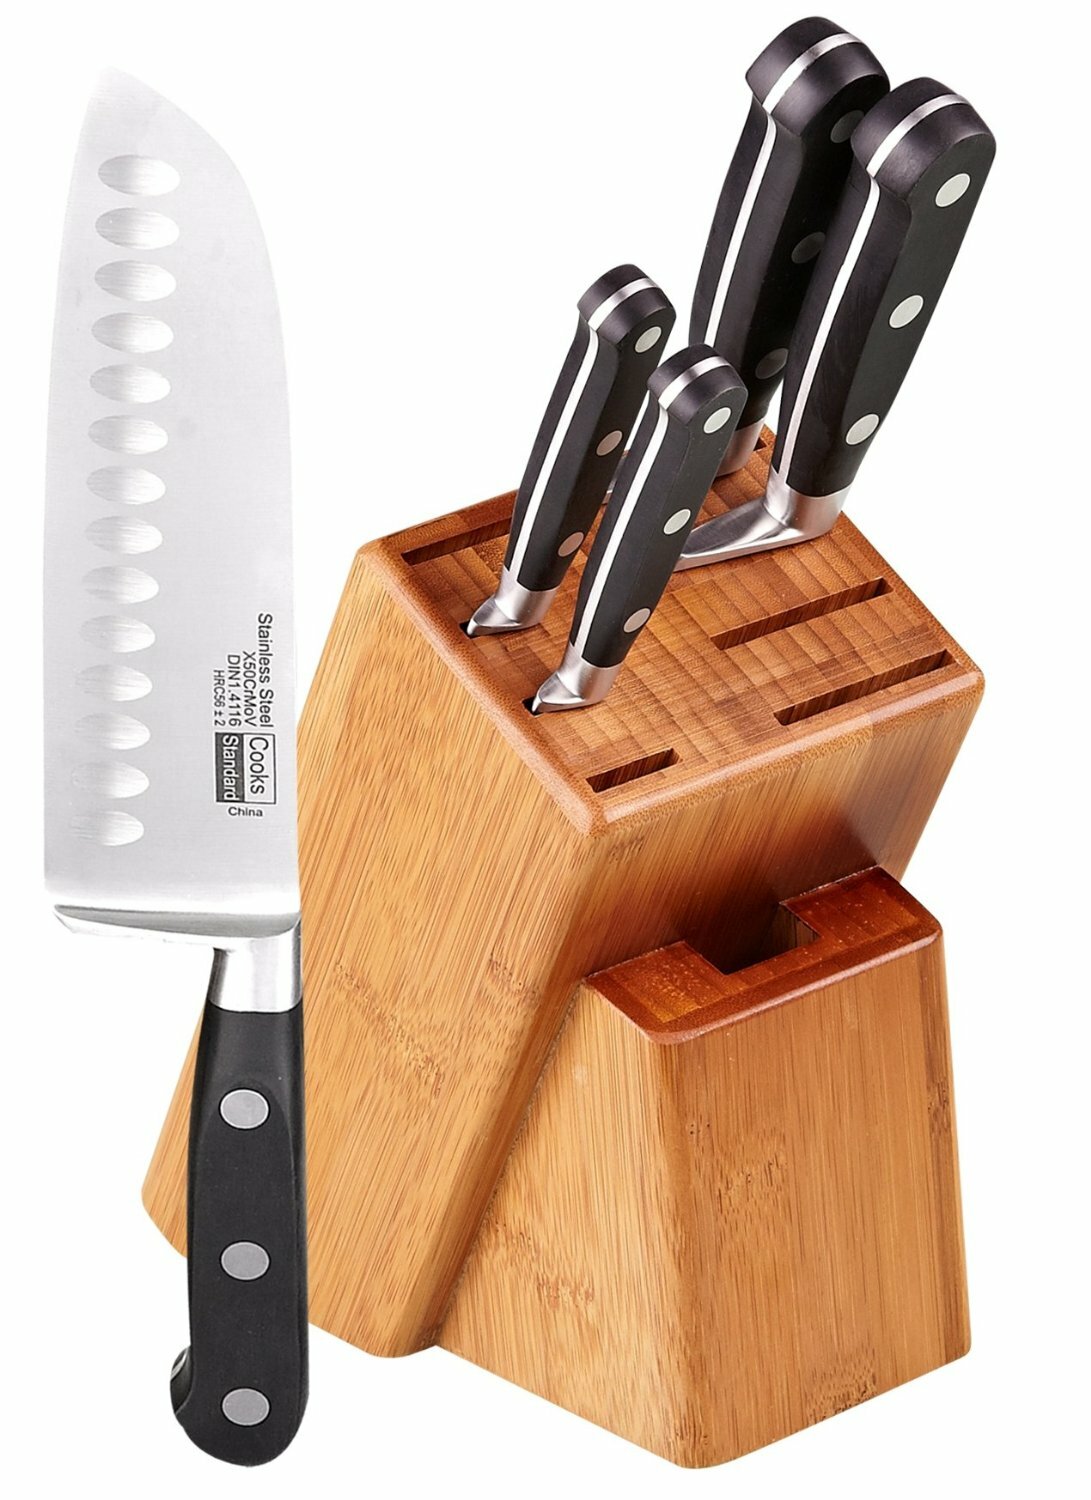 https://assets.wfcdn.com/im/22238576/compr-r85/2817/28173294/cooks-standard-asian-gourmet-5-piece-high-carbon-stainless-steel-knife-block-set.jpg